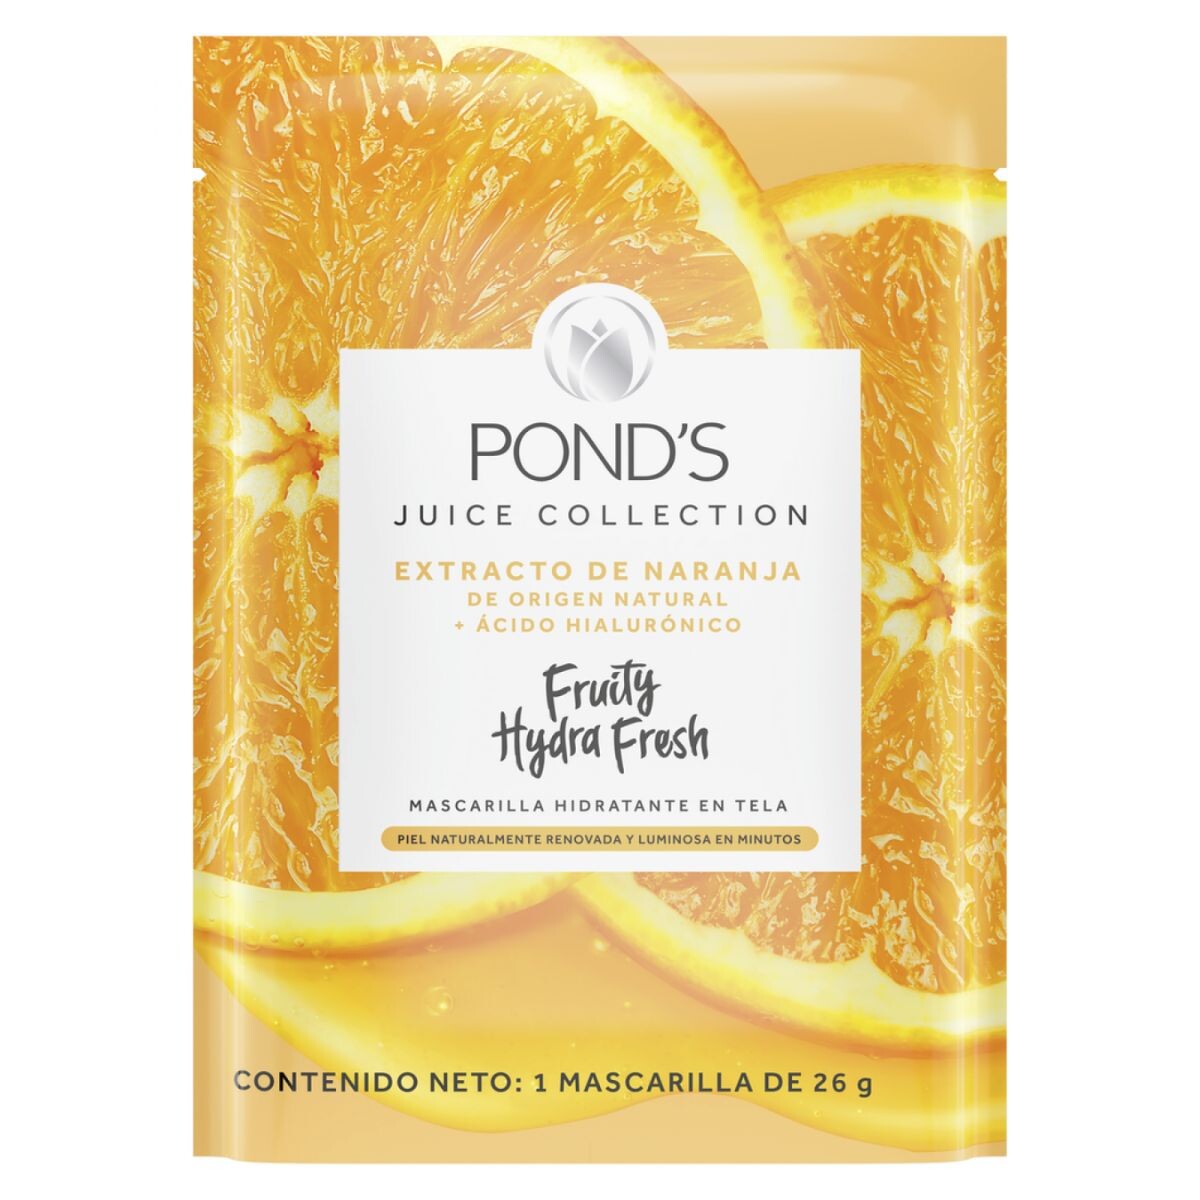 Mascarilla Facial Pond's Fruity Hydra Fresh con Naranja 